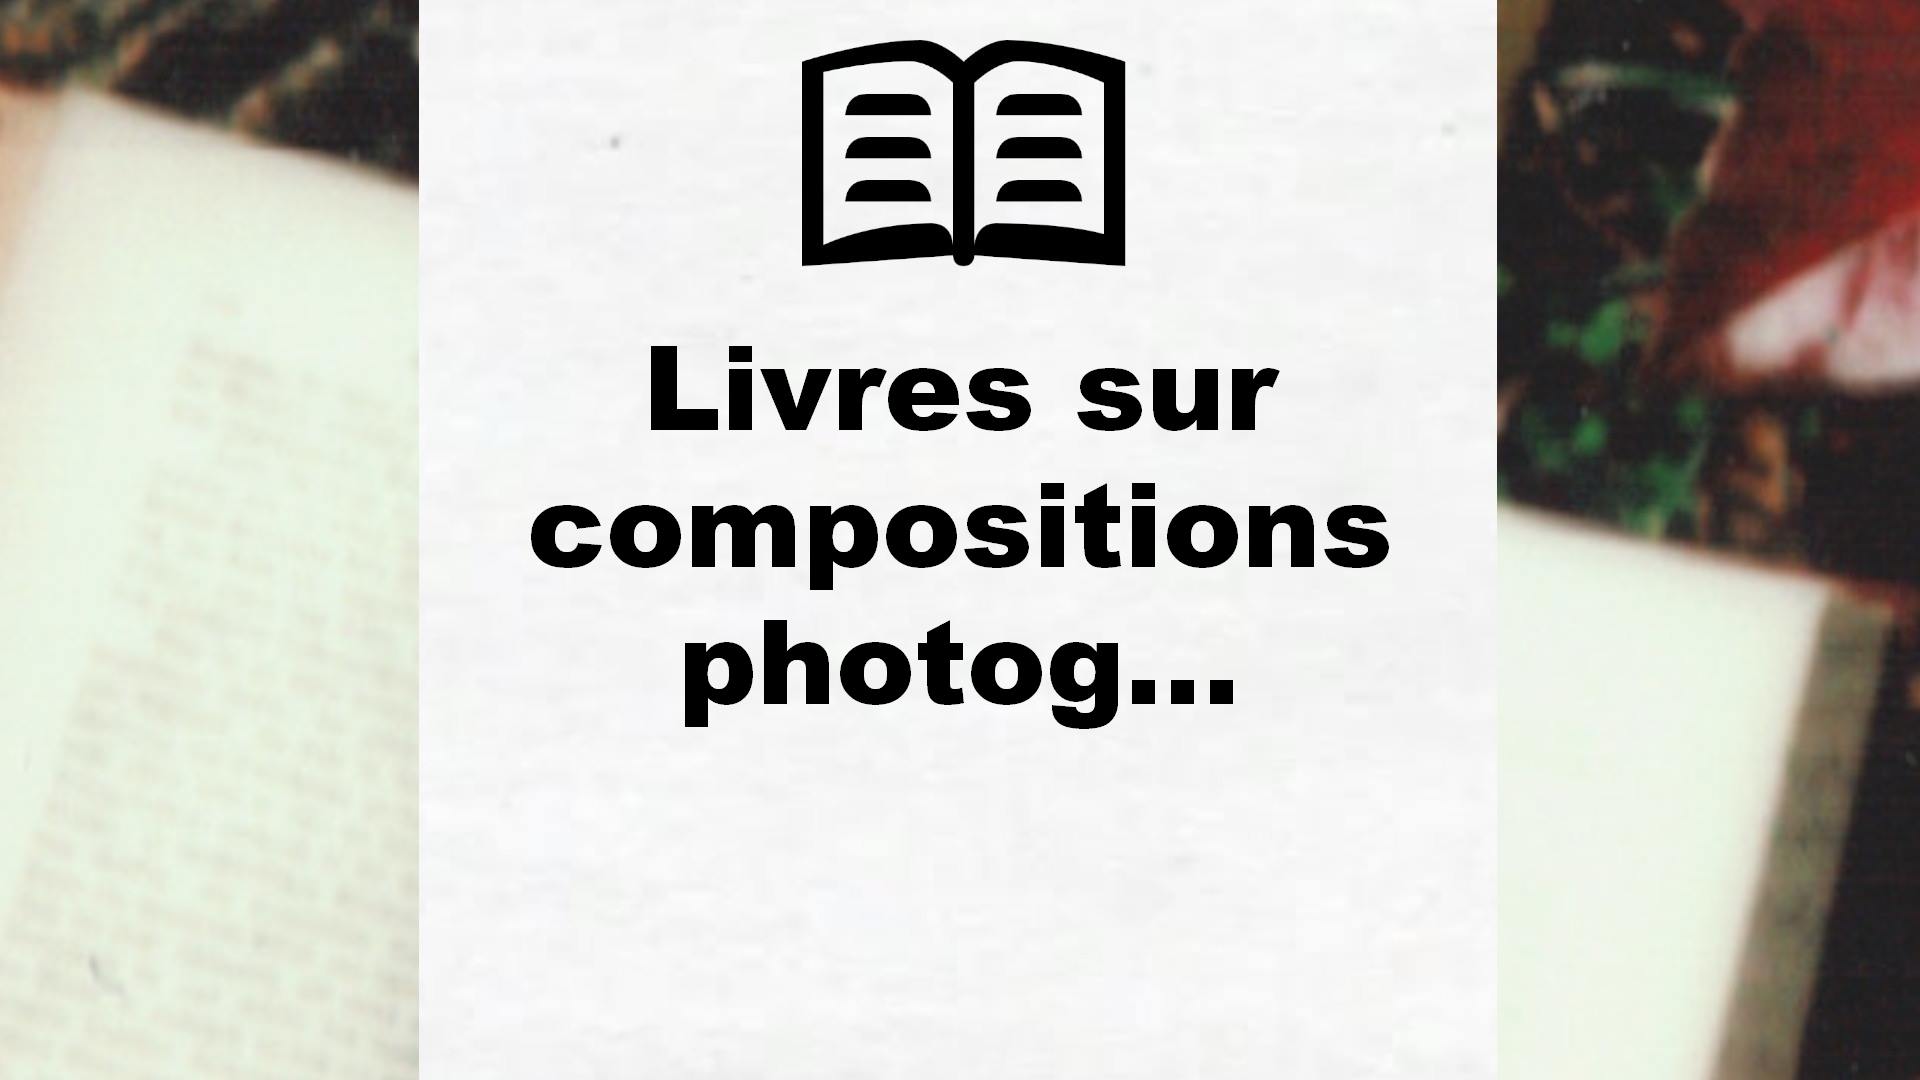 Livres sur compositions photographiques